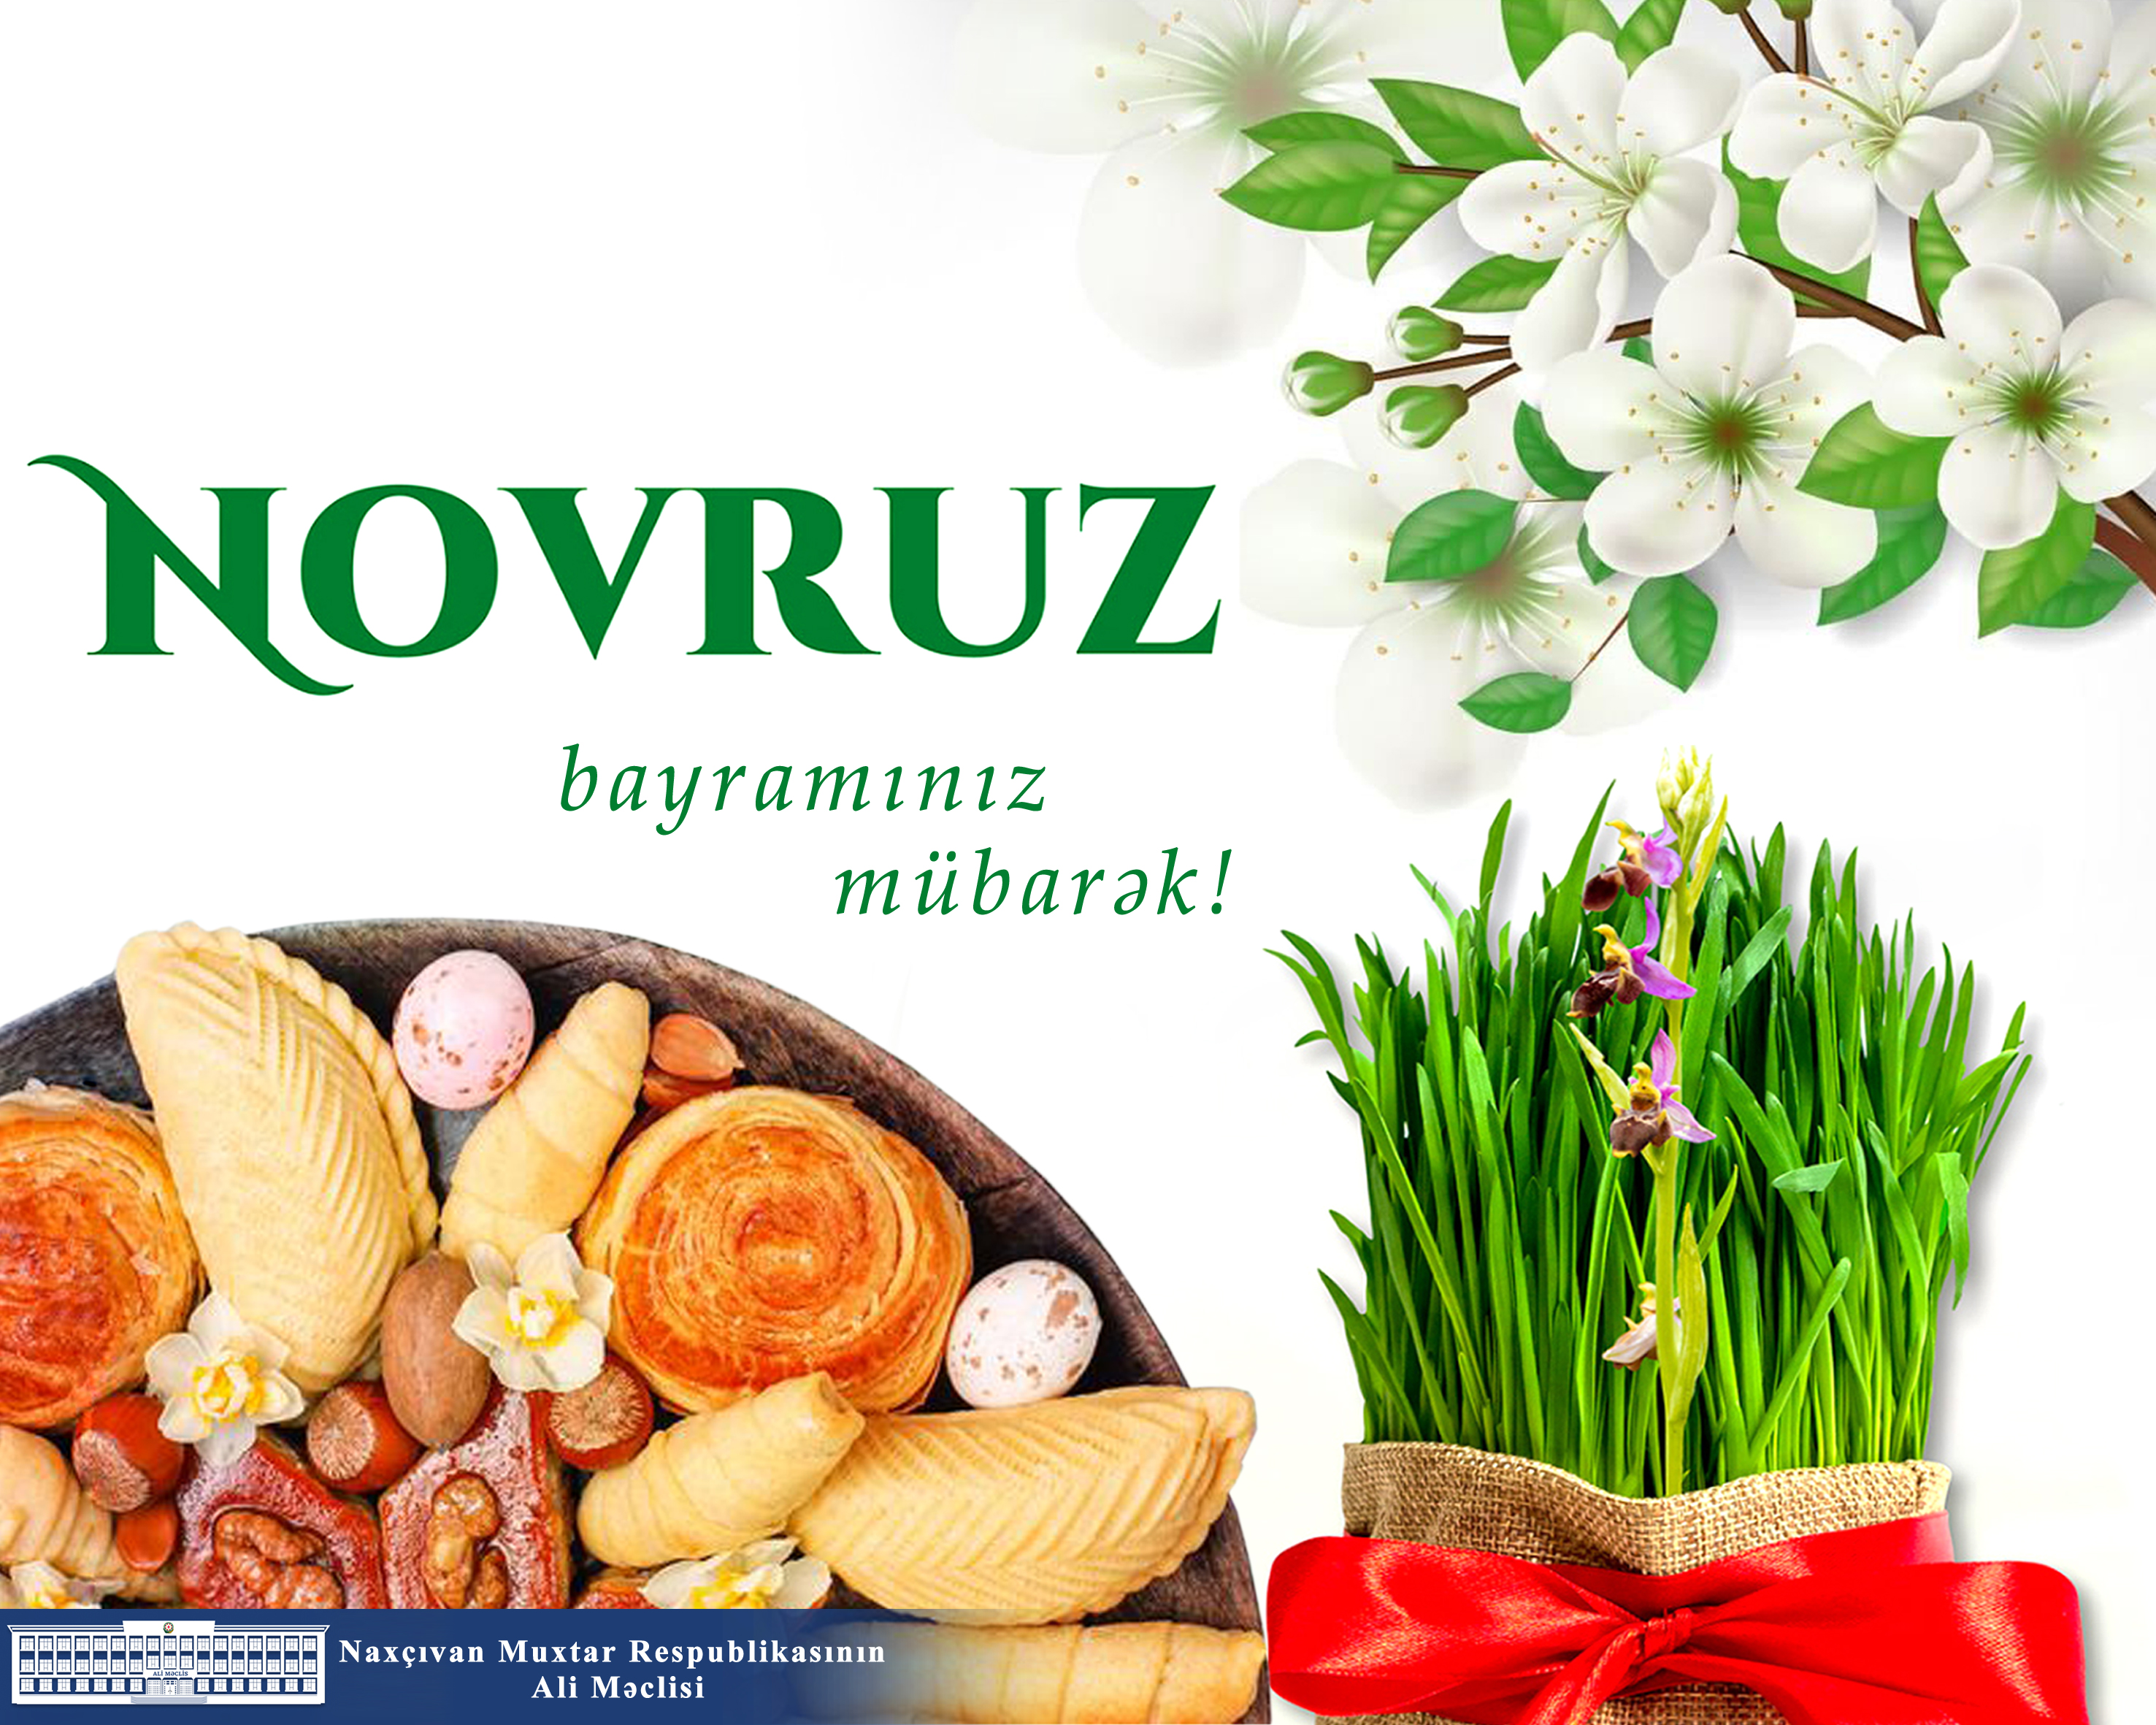 Azərbaycan xalqının milli dəyərlərini özündə yaşadan qədim mədəniyyət - Novruz bayramı